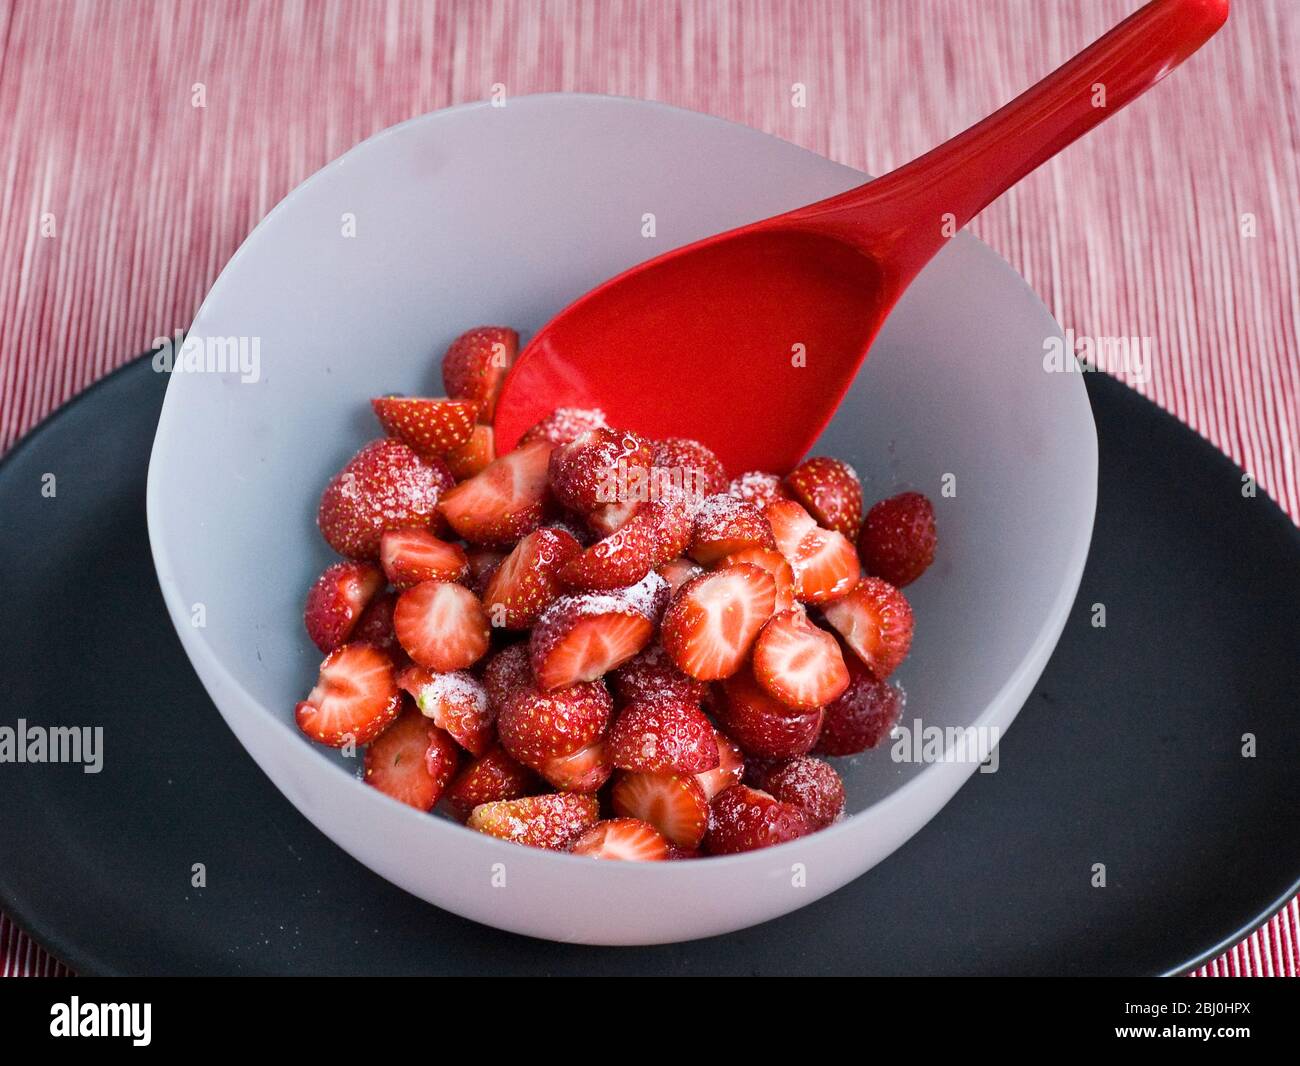 Erdbeeren, geschält und halbiert, mit Gießzucker bestäubt, in einer Schüssel aus mattem Glas auf schwarzem Teller mit hellrotem Melaminlöffel serviert. - Stockfoto